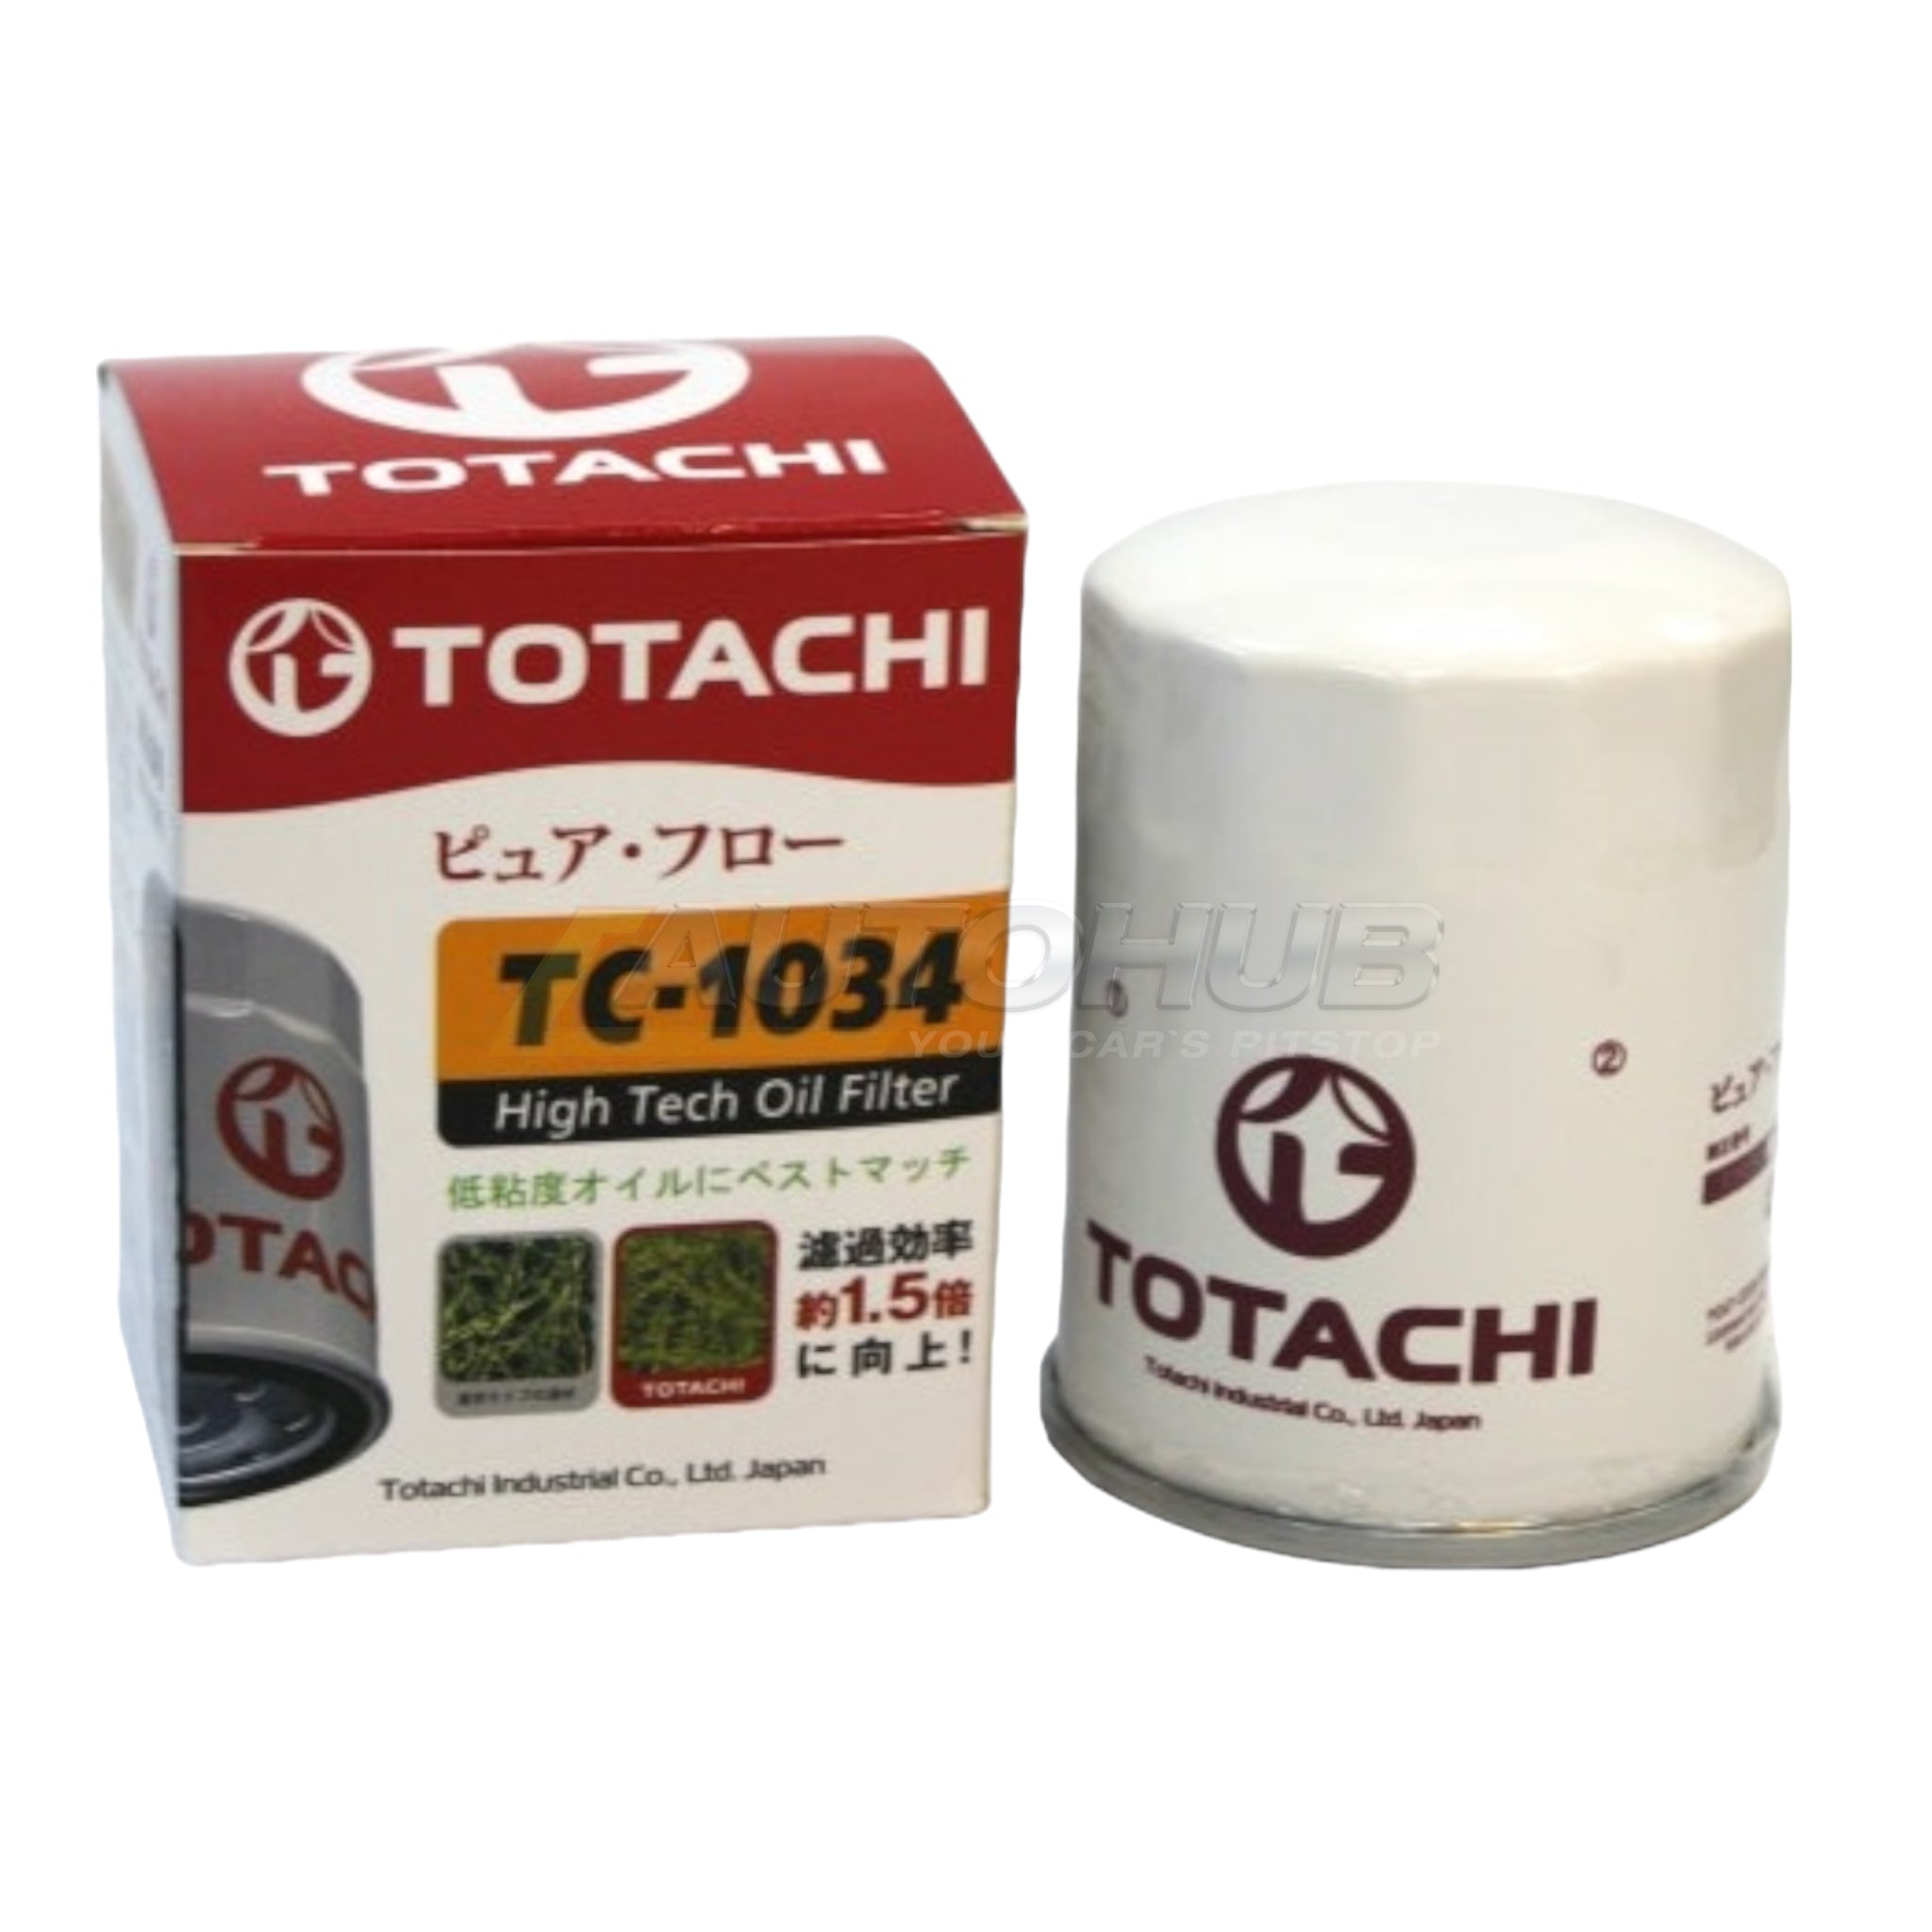 Totachi Oil Filter VIGO/REVO